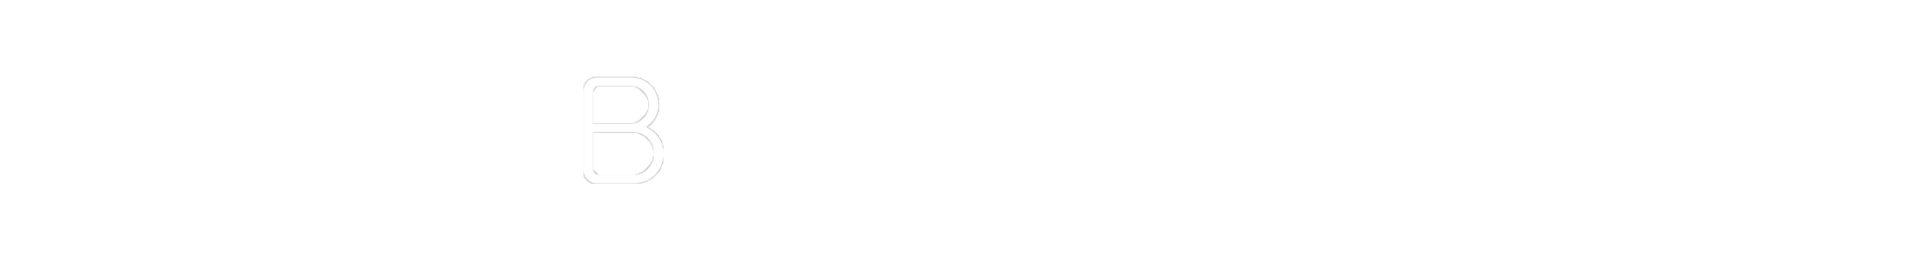 TechTarget_ESG_BrightTALK_RGB_Lockup-bw